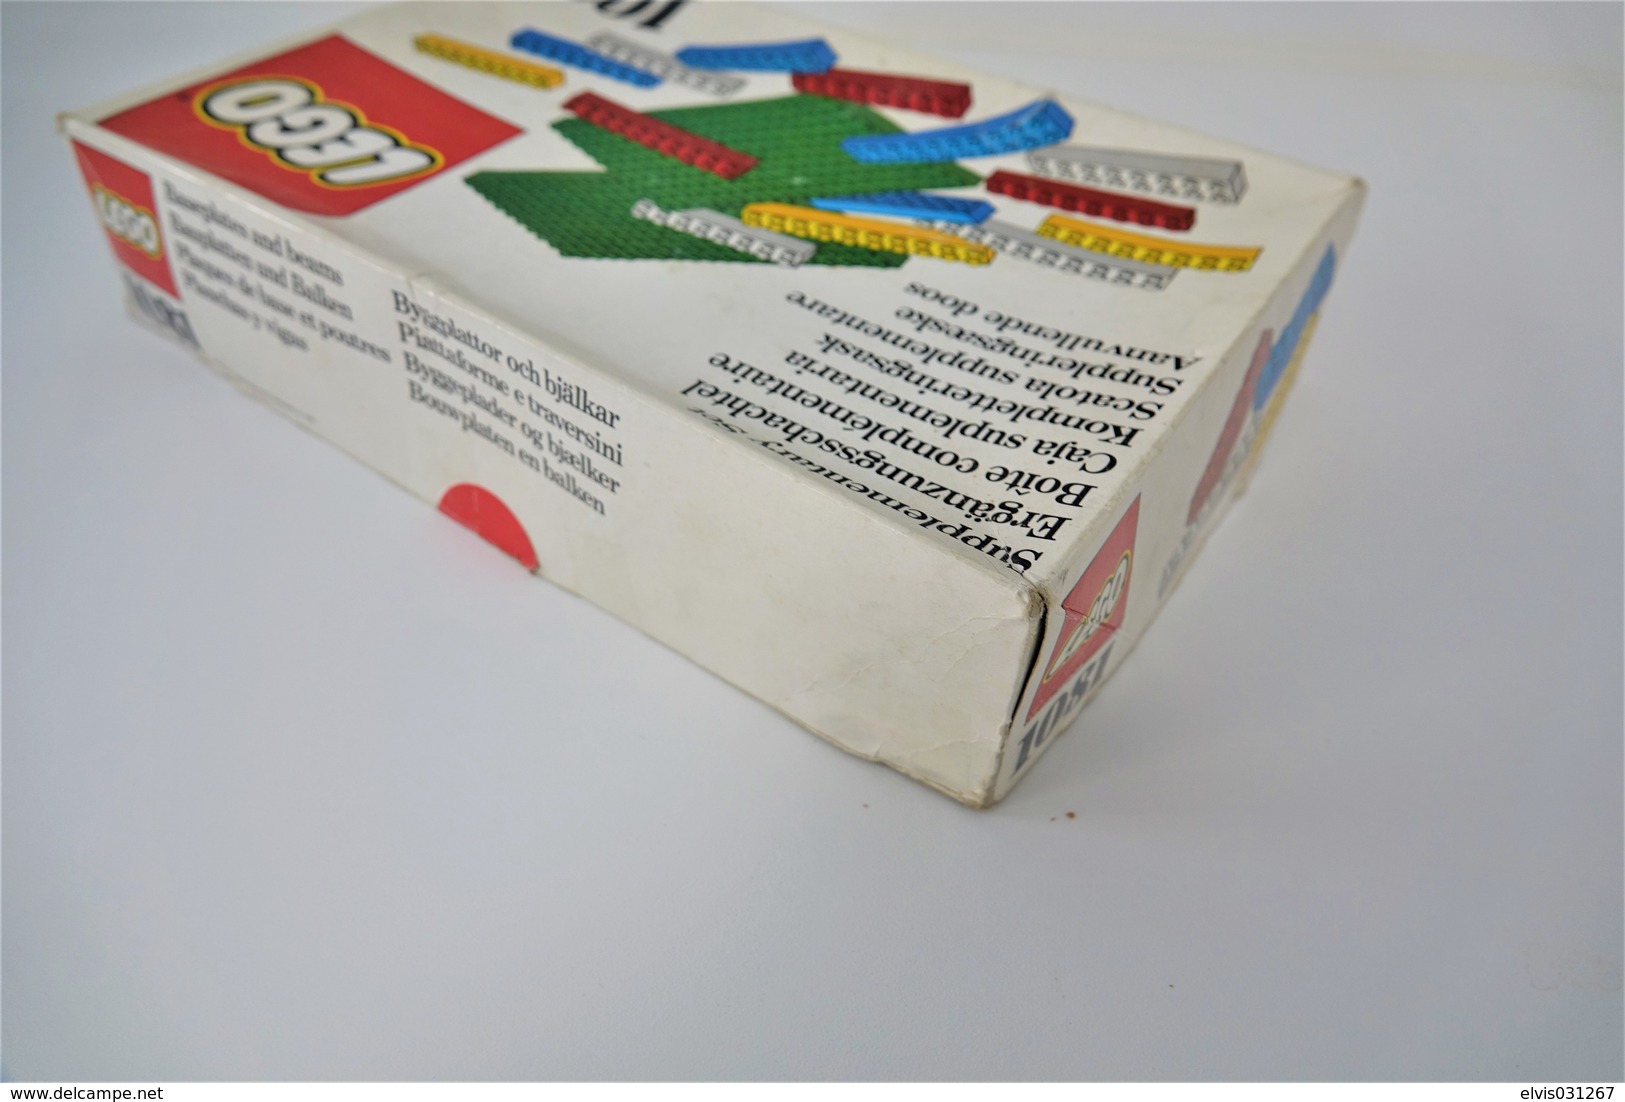 LEGO - 1081 Supplementary Box - Very Rare - Original Box - Original Lego 1976 - Vintage - Catalogues